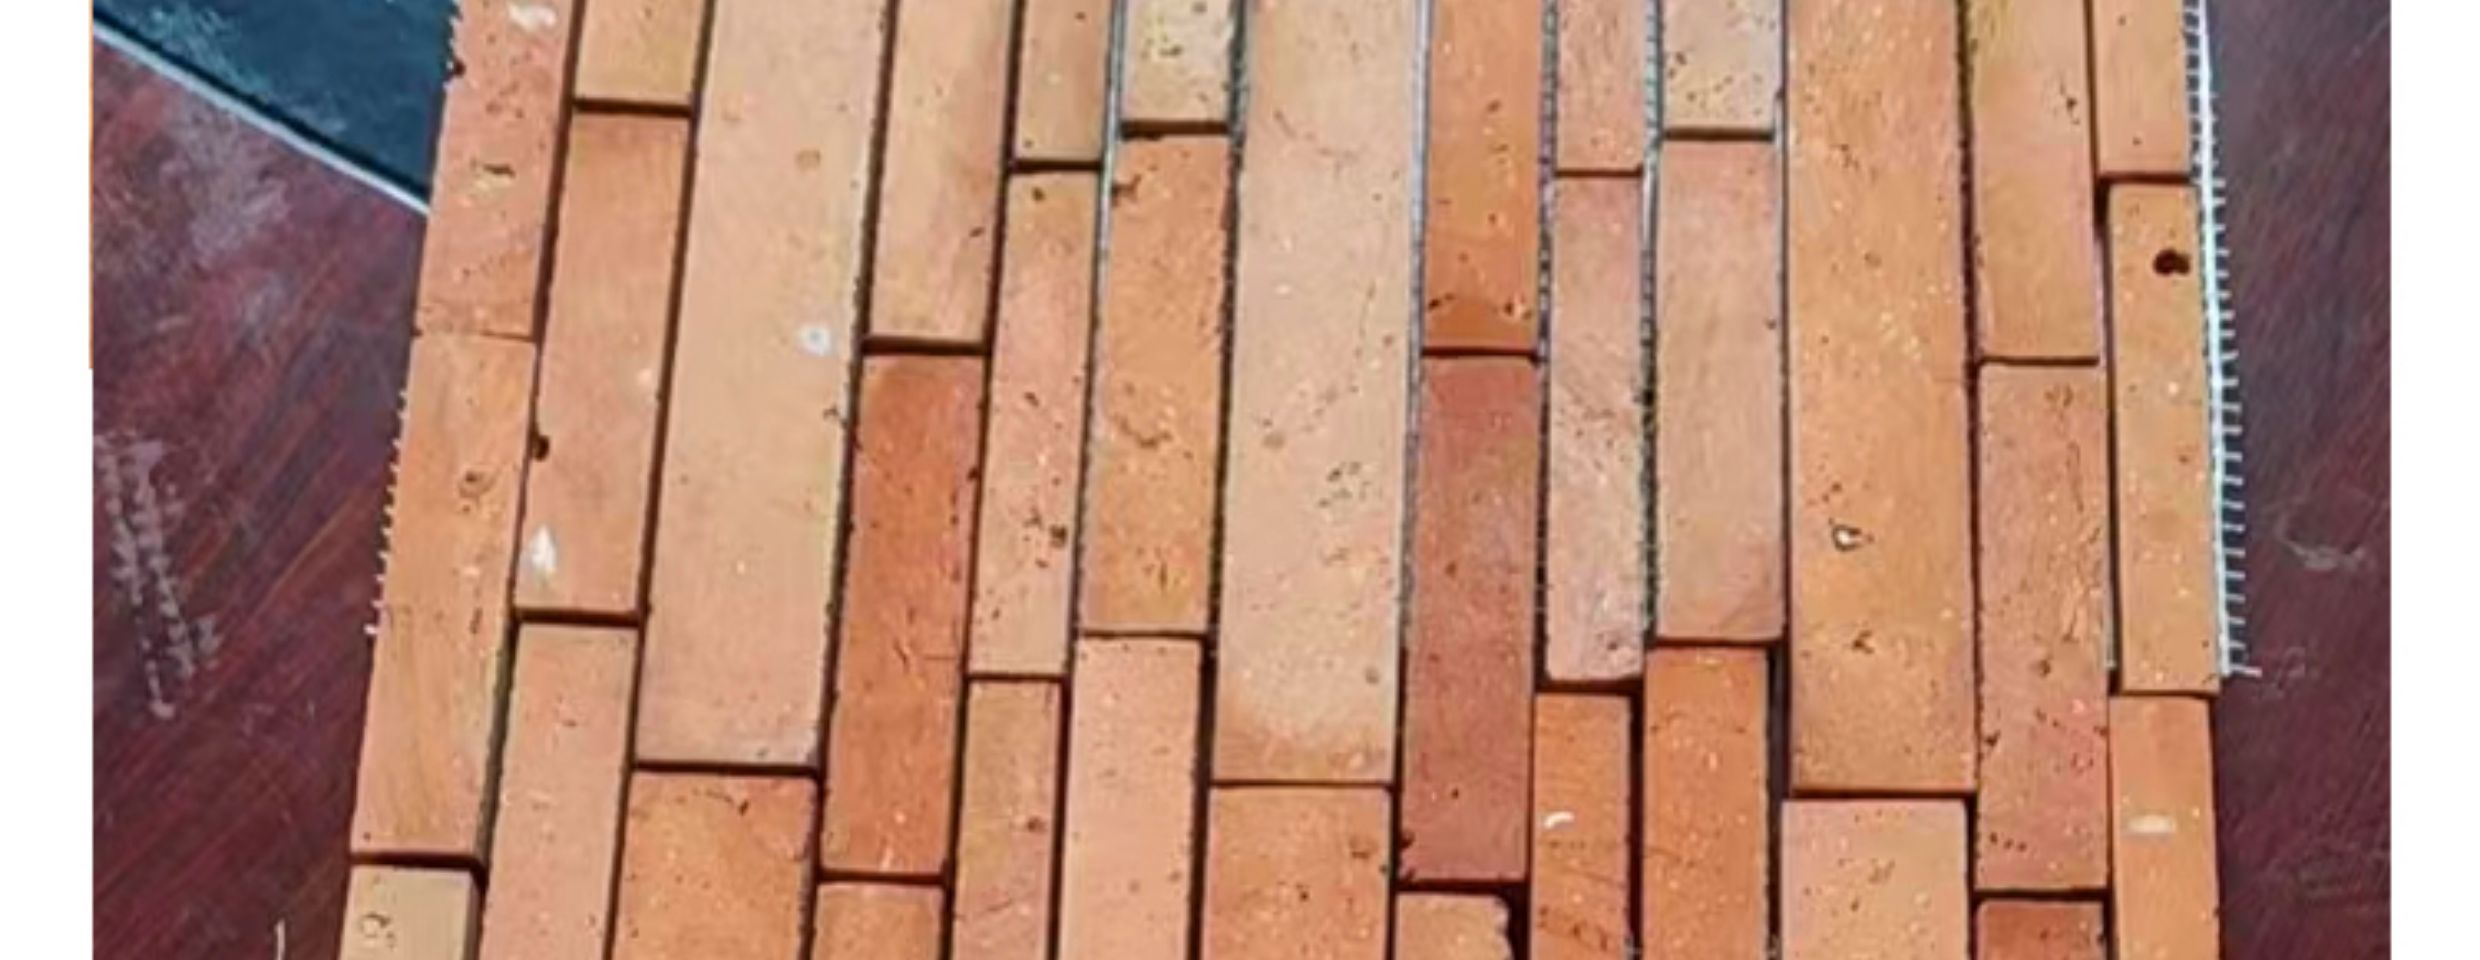 【廠家直銷】紅磚長短條馬賽克石材六角馬賽克文化仿古磚老紅磚真磚切割